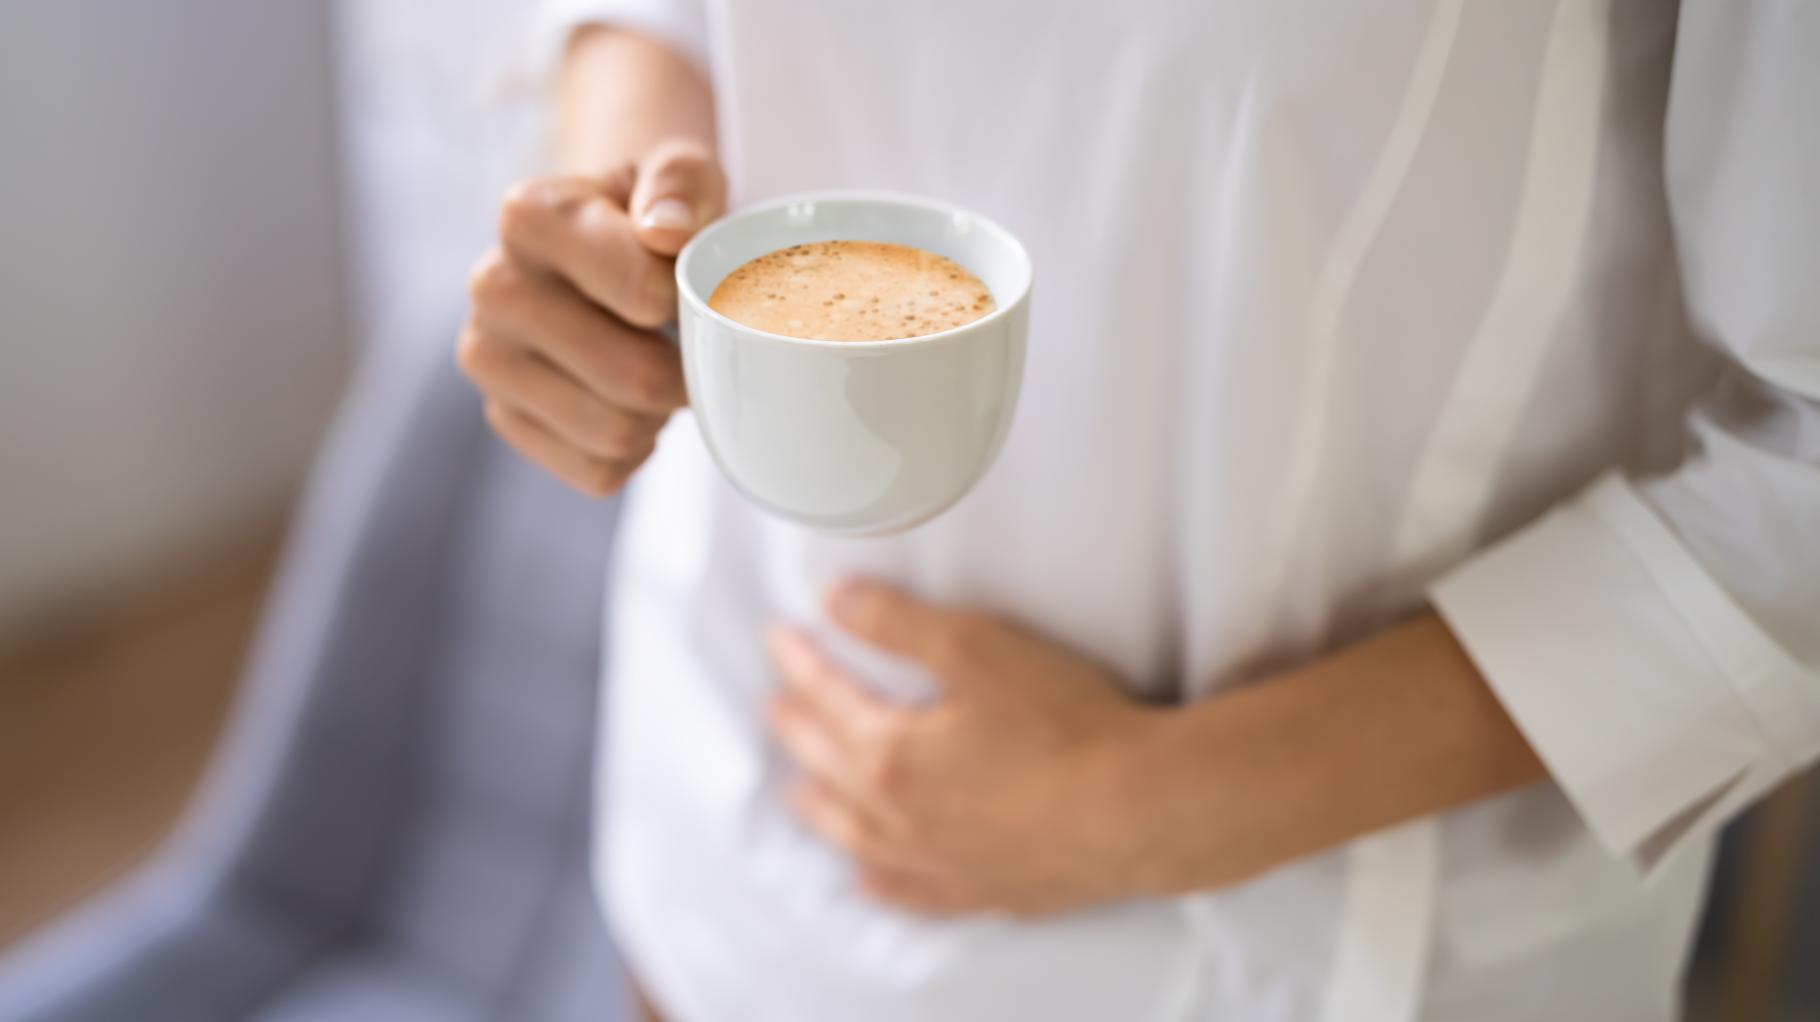 Kaffee auf leeren Magen trinken: Ist das ungesund?